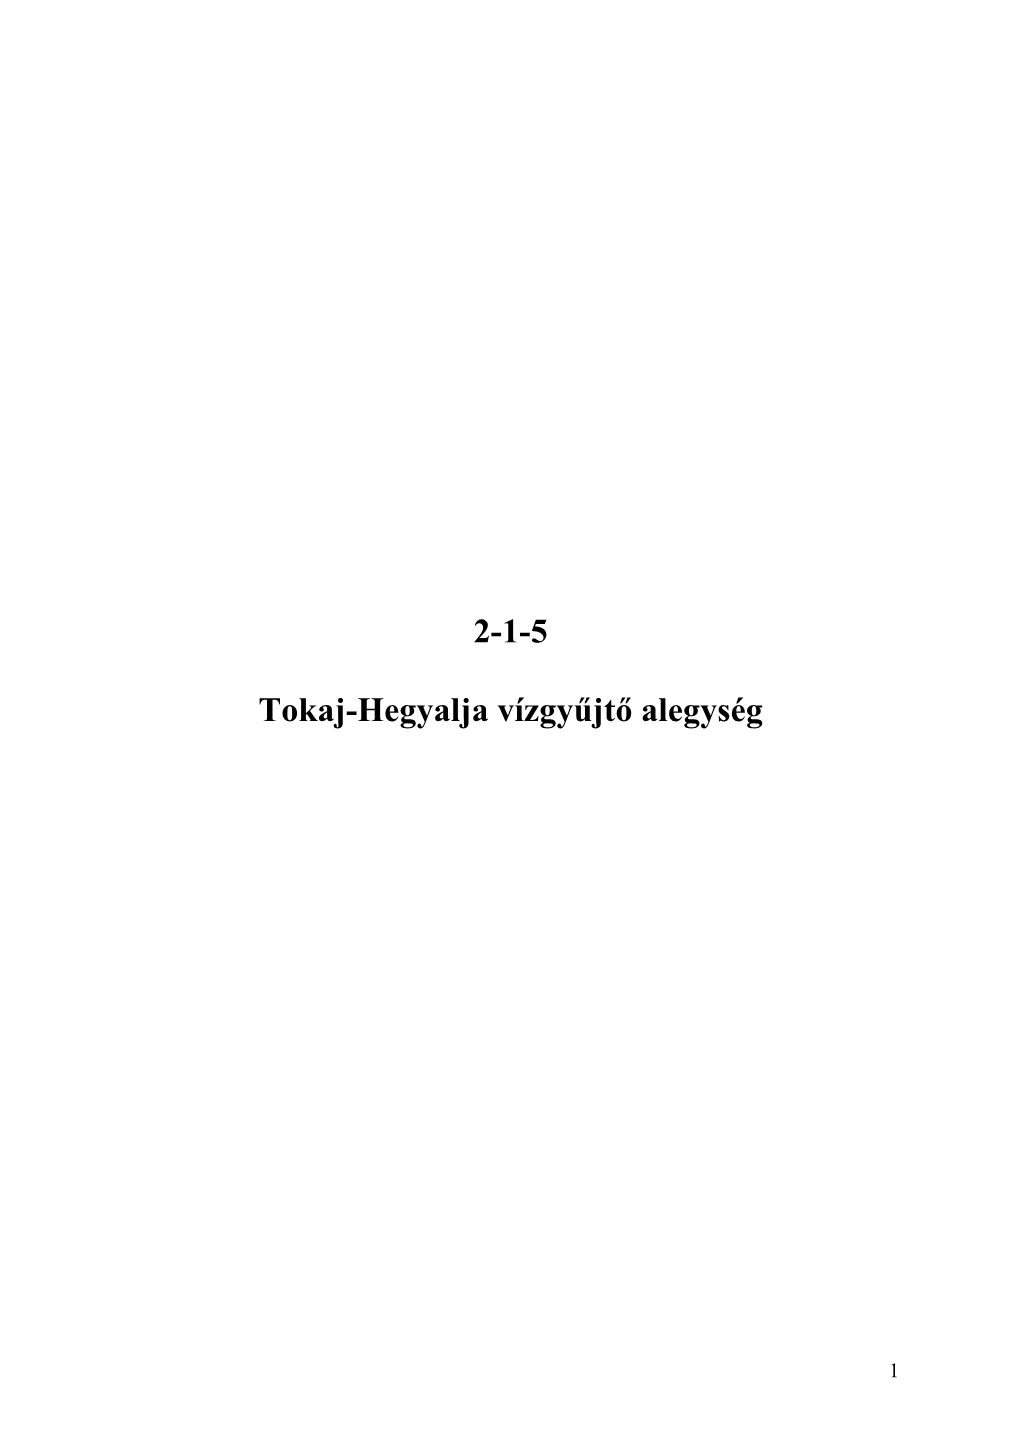 2-1-5 Tokaj-Hegyalja Vízgyűjtő Alegység